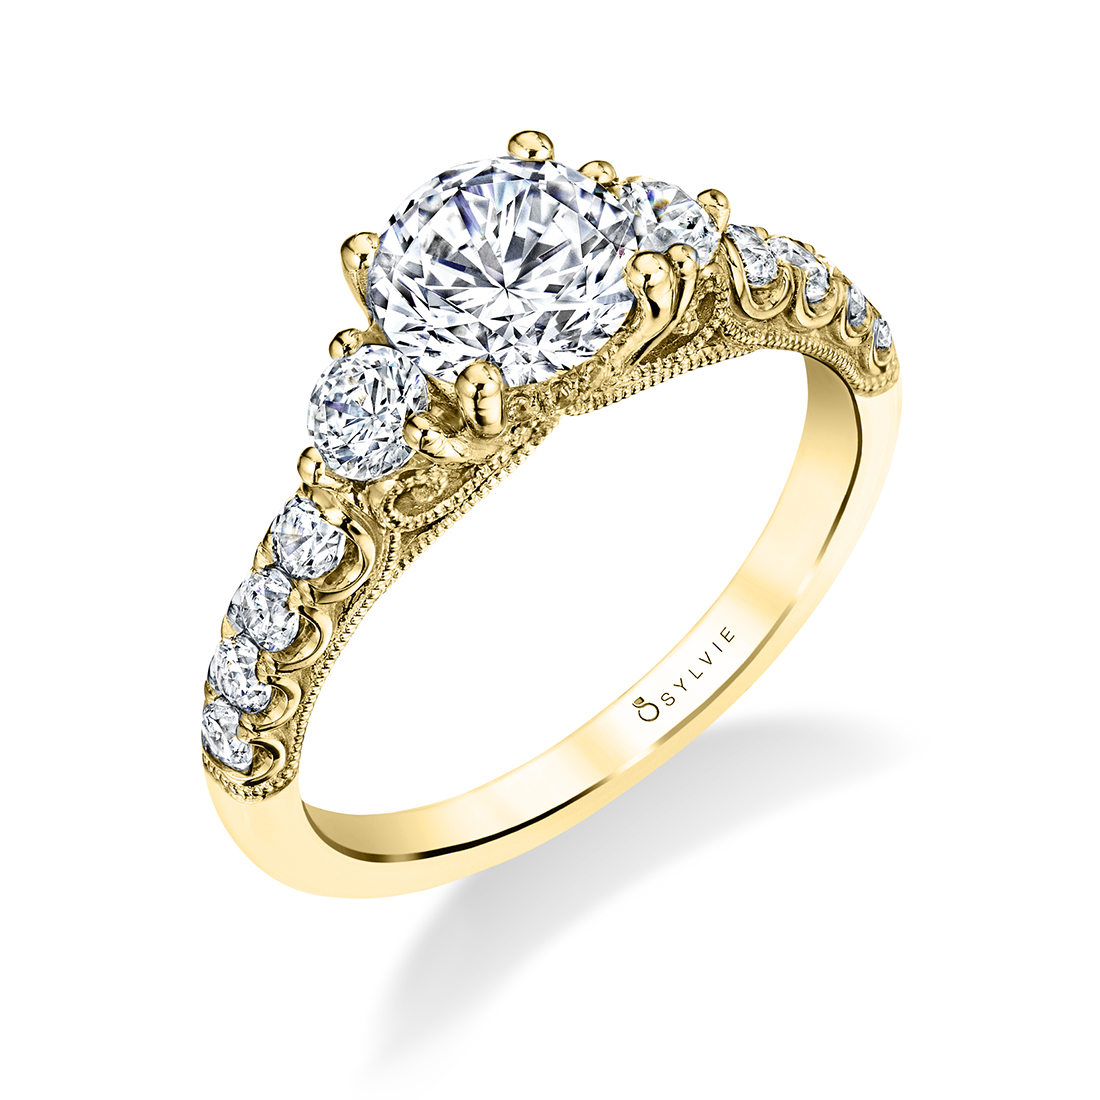 Three stone engagement ring with round diamonds in yellow gold - Lara